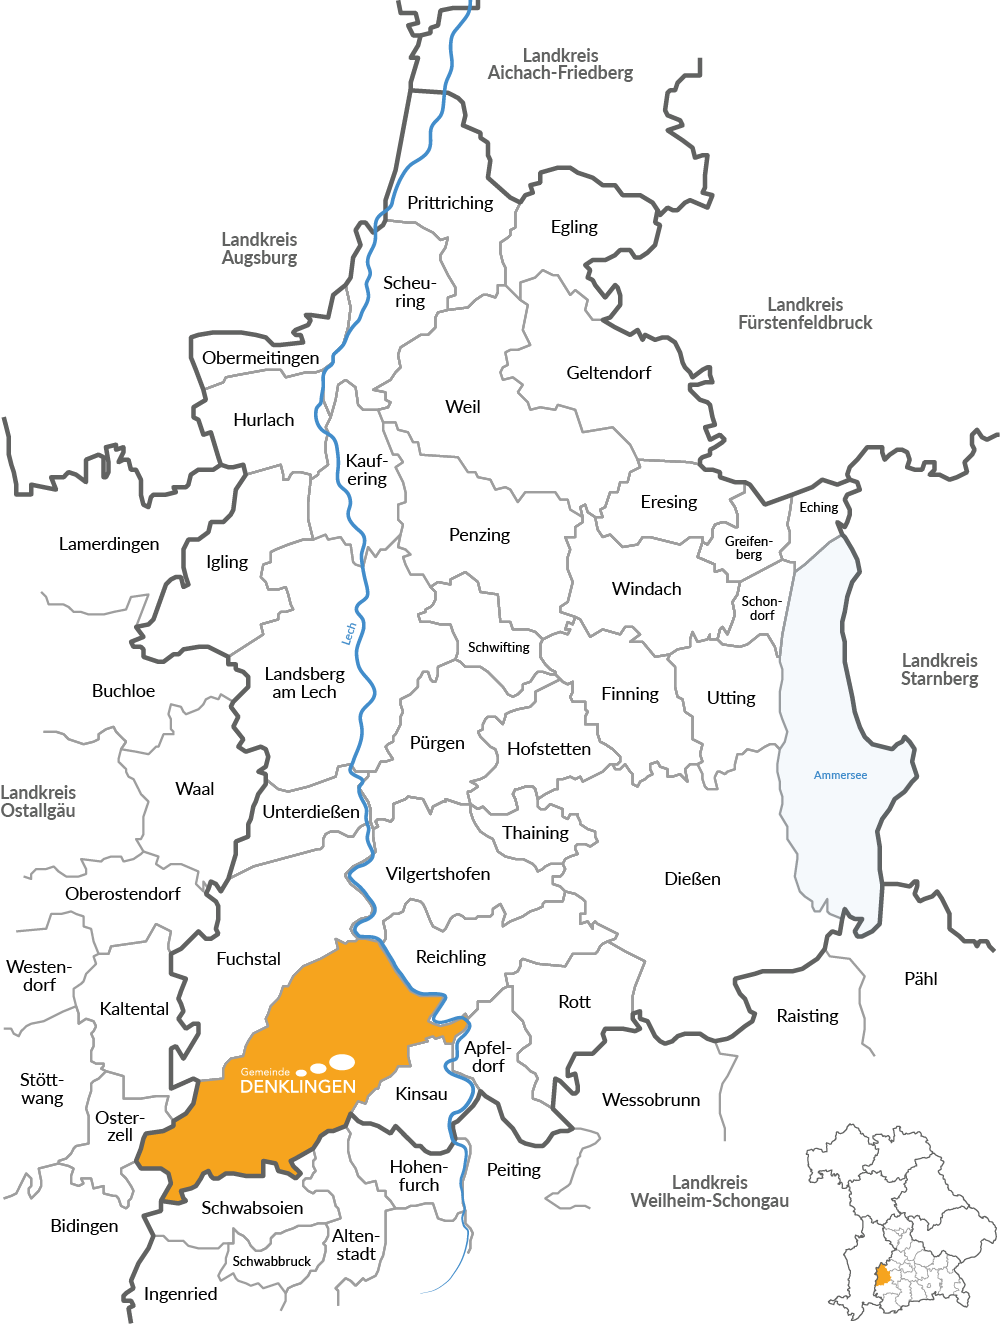 Verbreitungsgebiet des Mitteilungsblatts Denklingen auf der Landkarte des Landkreises Landsberg am Lech